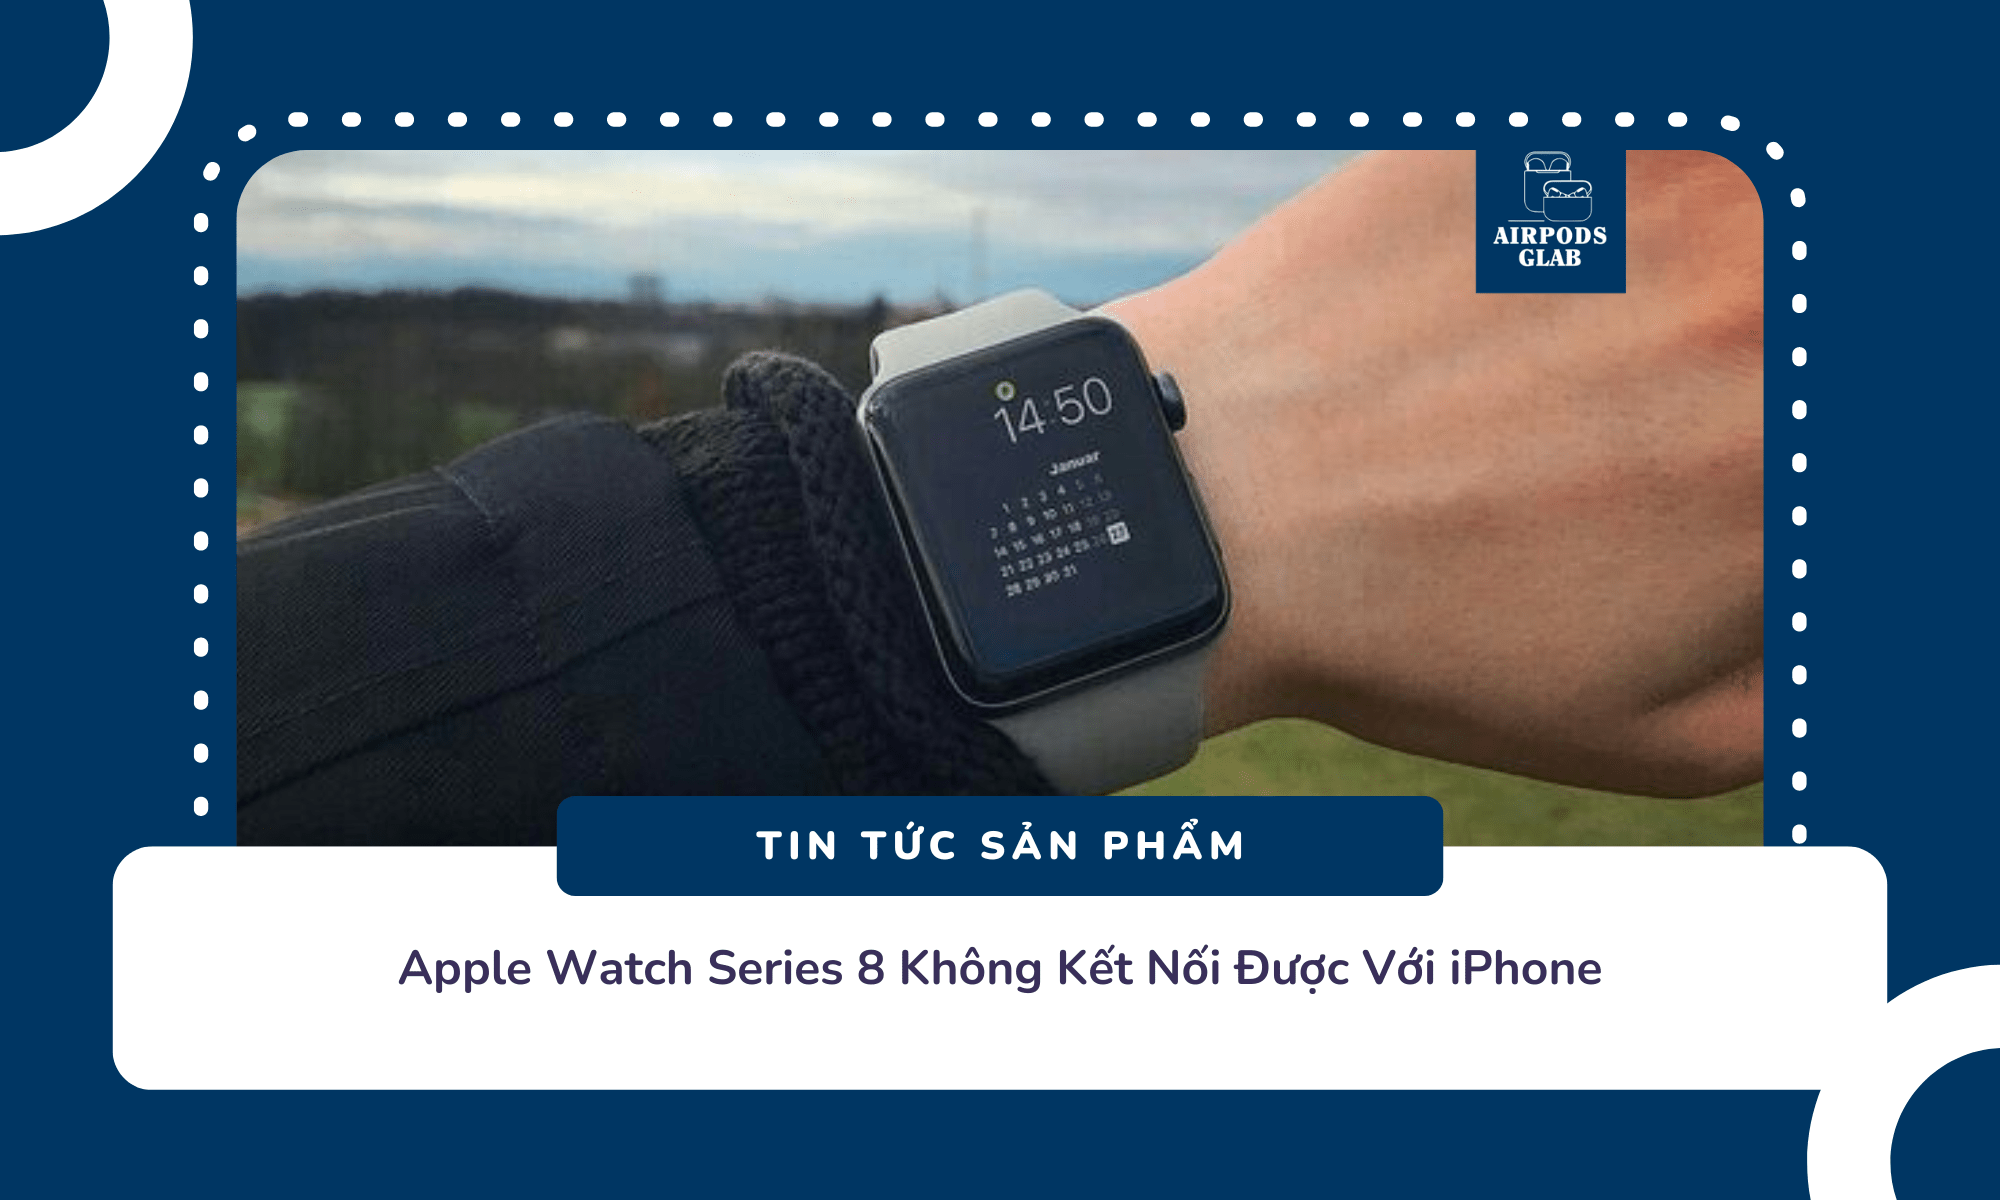 cach-ket-noi-apple-watch-series-8-voi-iphone